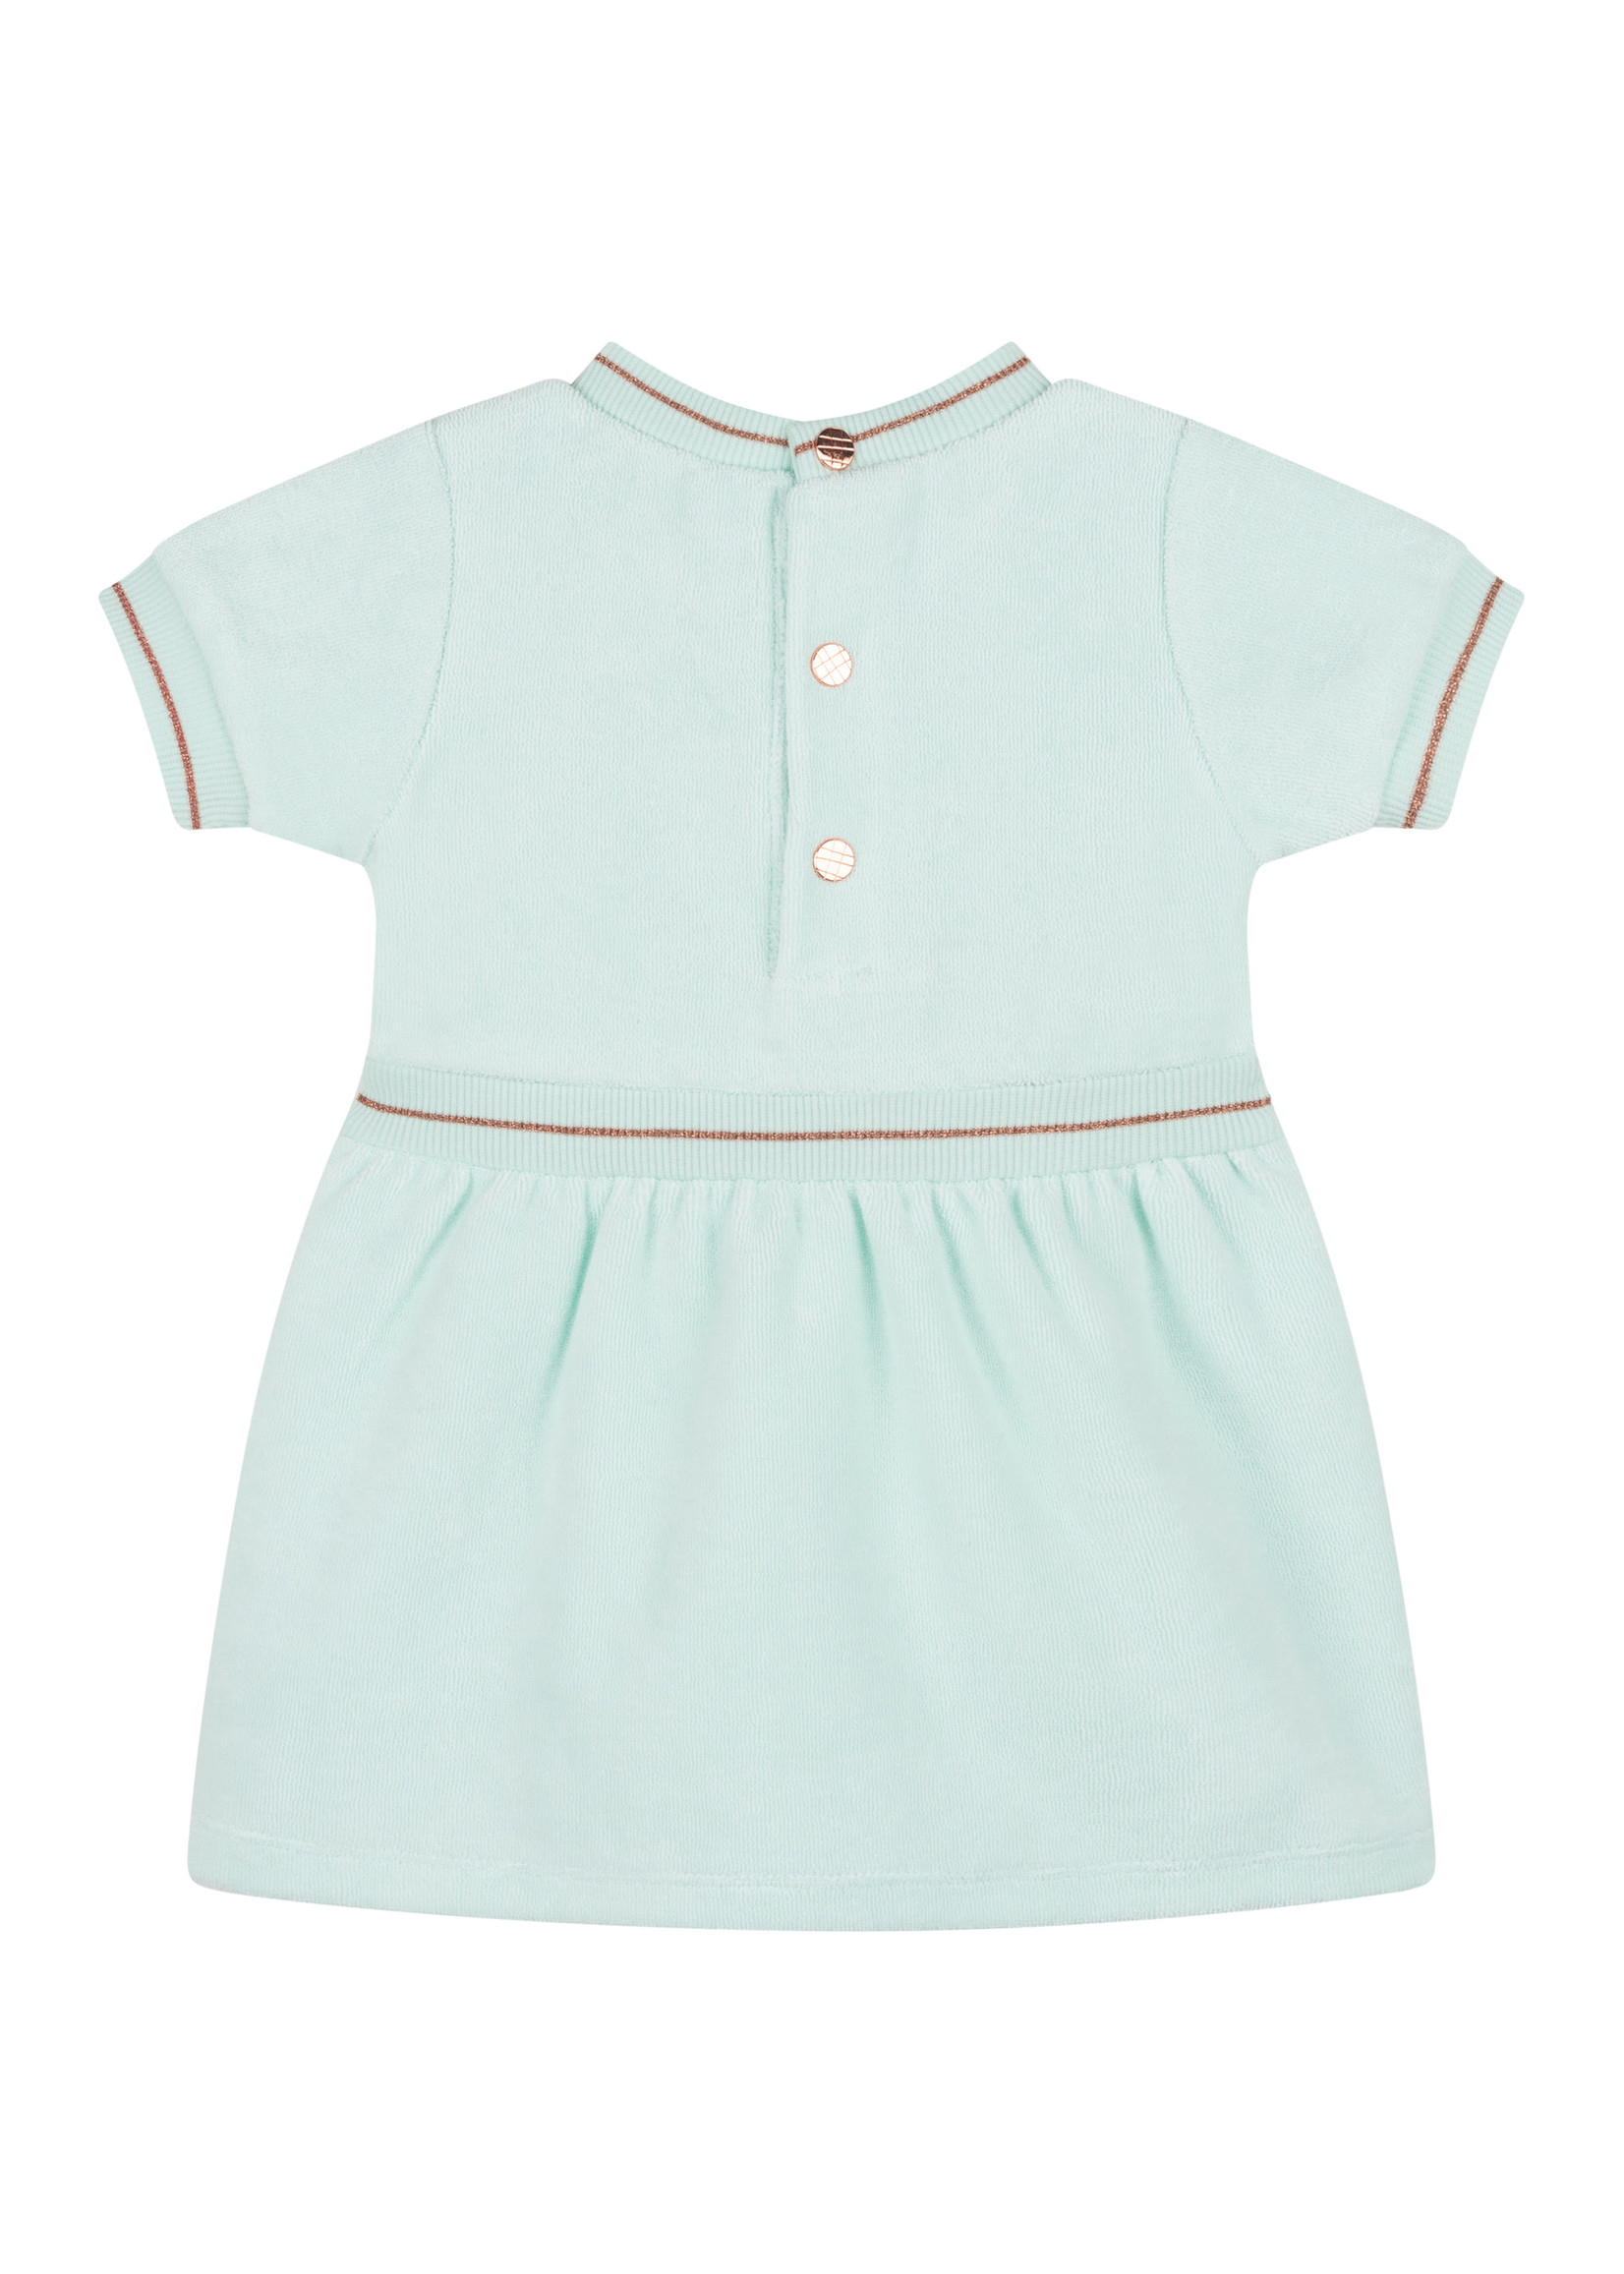 Carrément Beau Carrément Beau Babygirl dress éponge pastel green/blue - Y02060